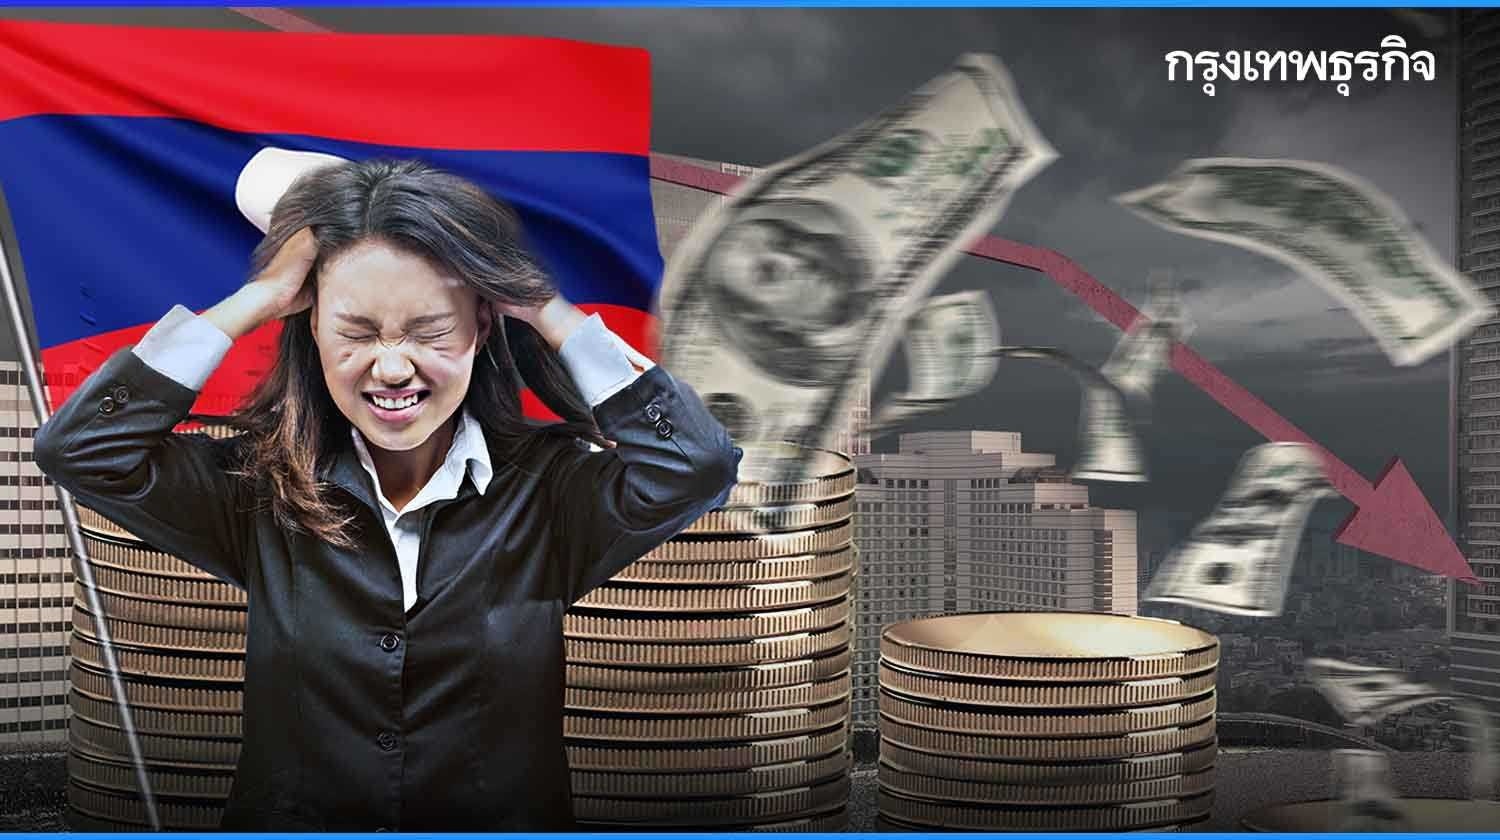 ‘ลาว’ เผชิญวิกฤติ ‘หนี้ท่วม’ ดอลลาร์แข็งค่า กดดันค่าเงินทั่วเอเชีย